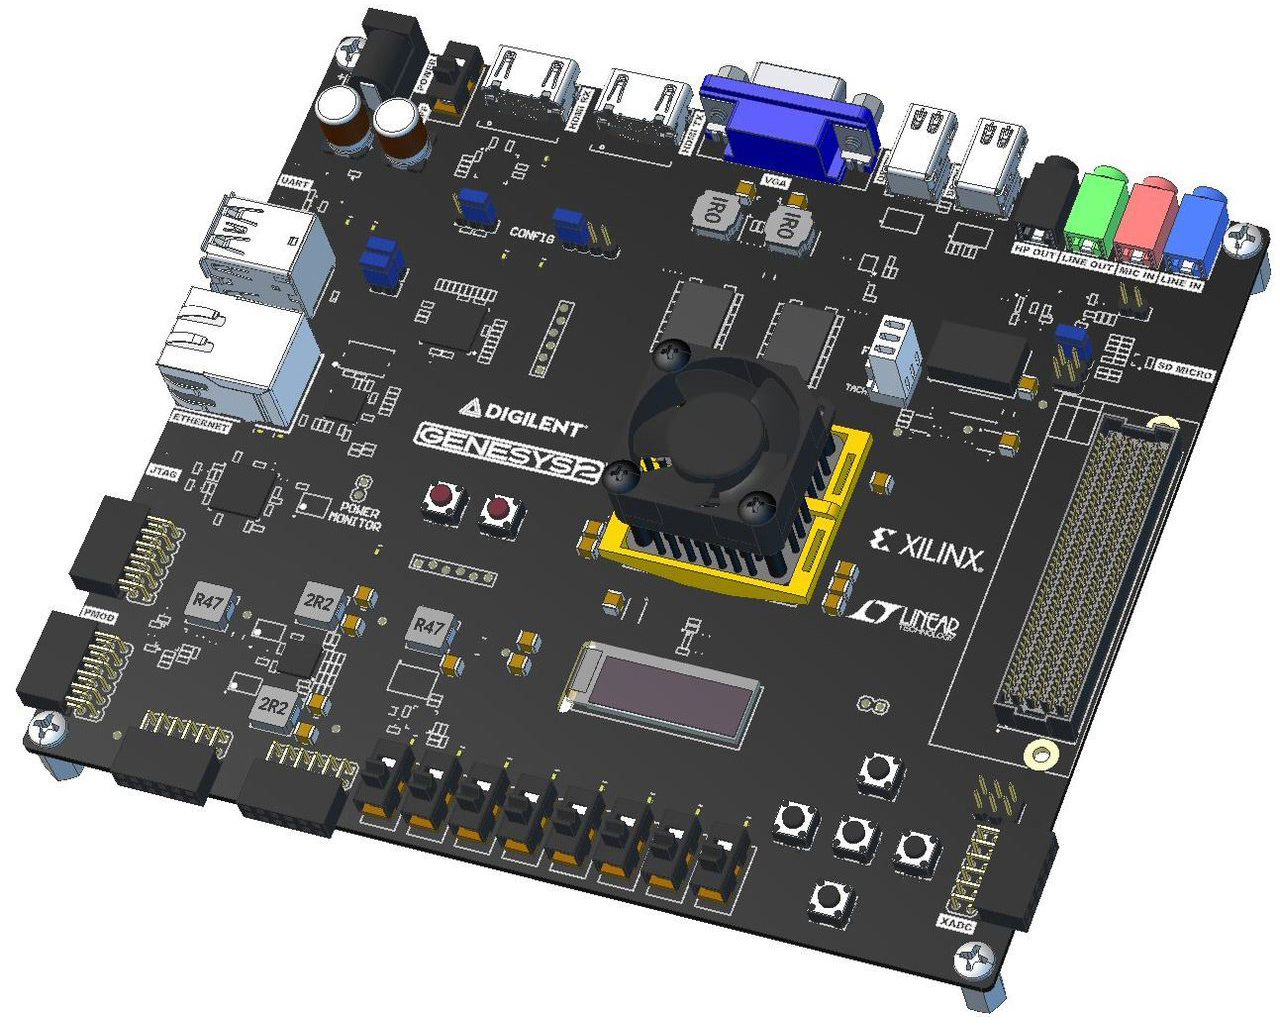 Digilent Xilinx Genesys 2 Kintex-7 FPGA Entwicklungsboard - Zum Vergrößern klicken